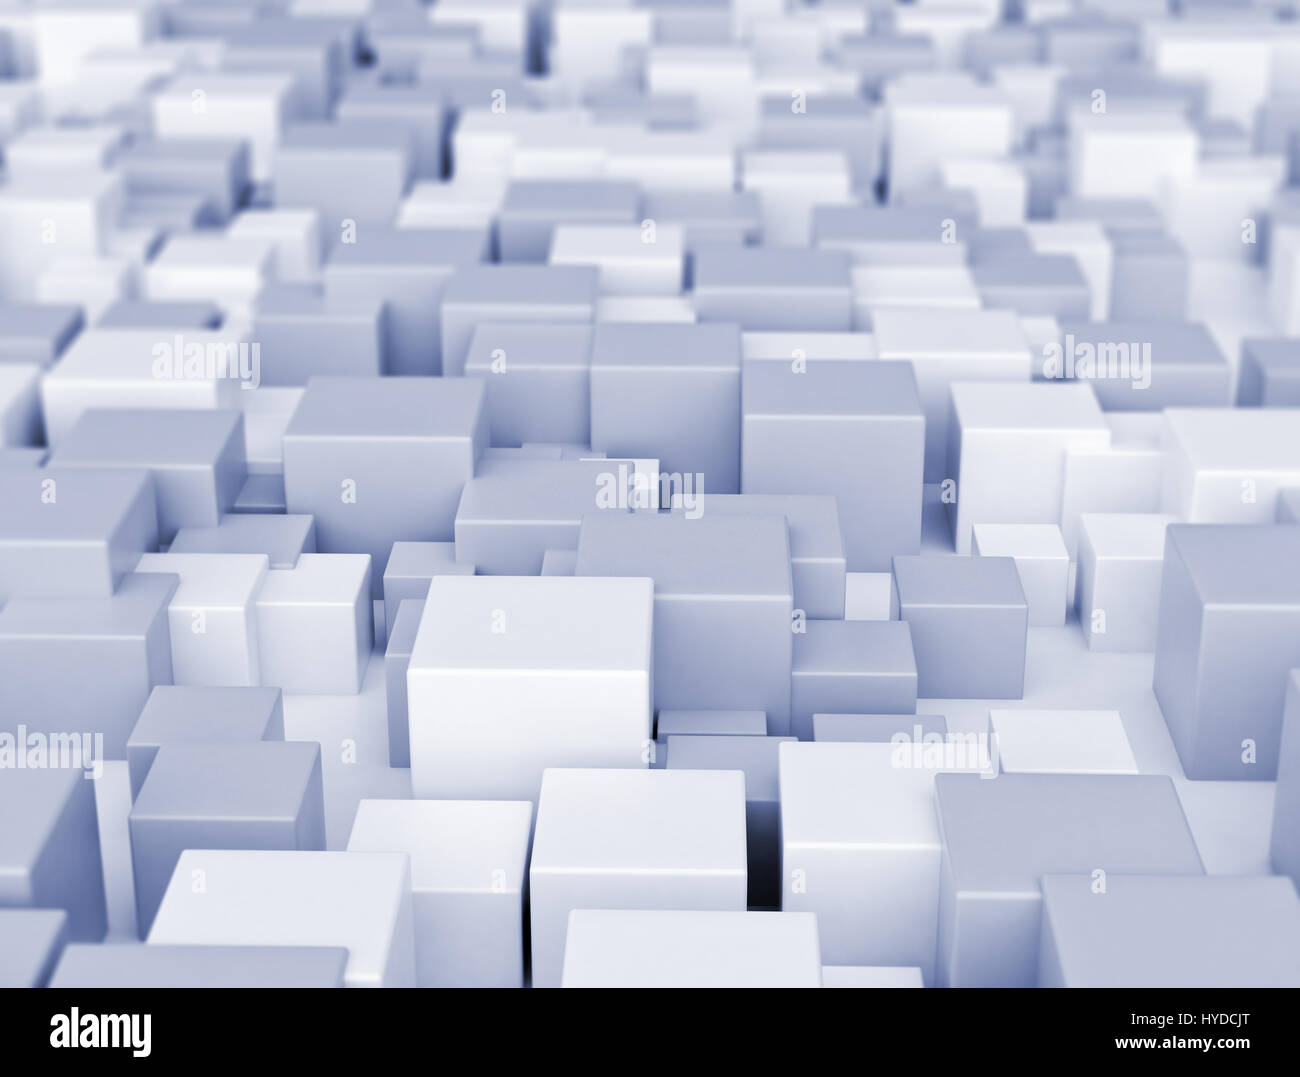 Resumen de cubos 3d variación de fondo Foto de stock